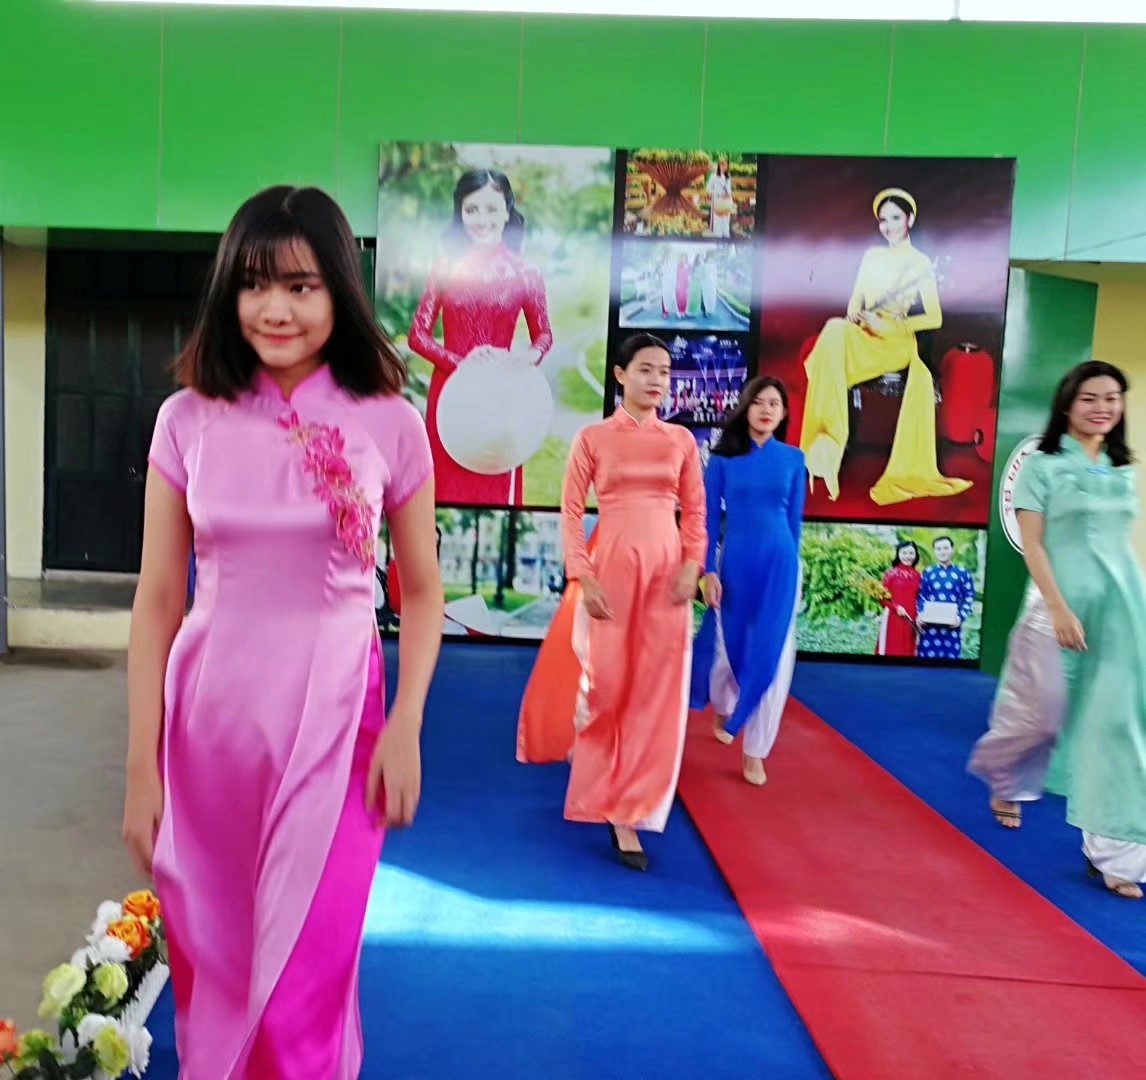 越南旗袍是越南女人的国服，这种服饰和中国旗跑极为相似……